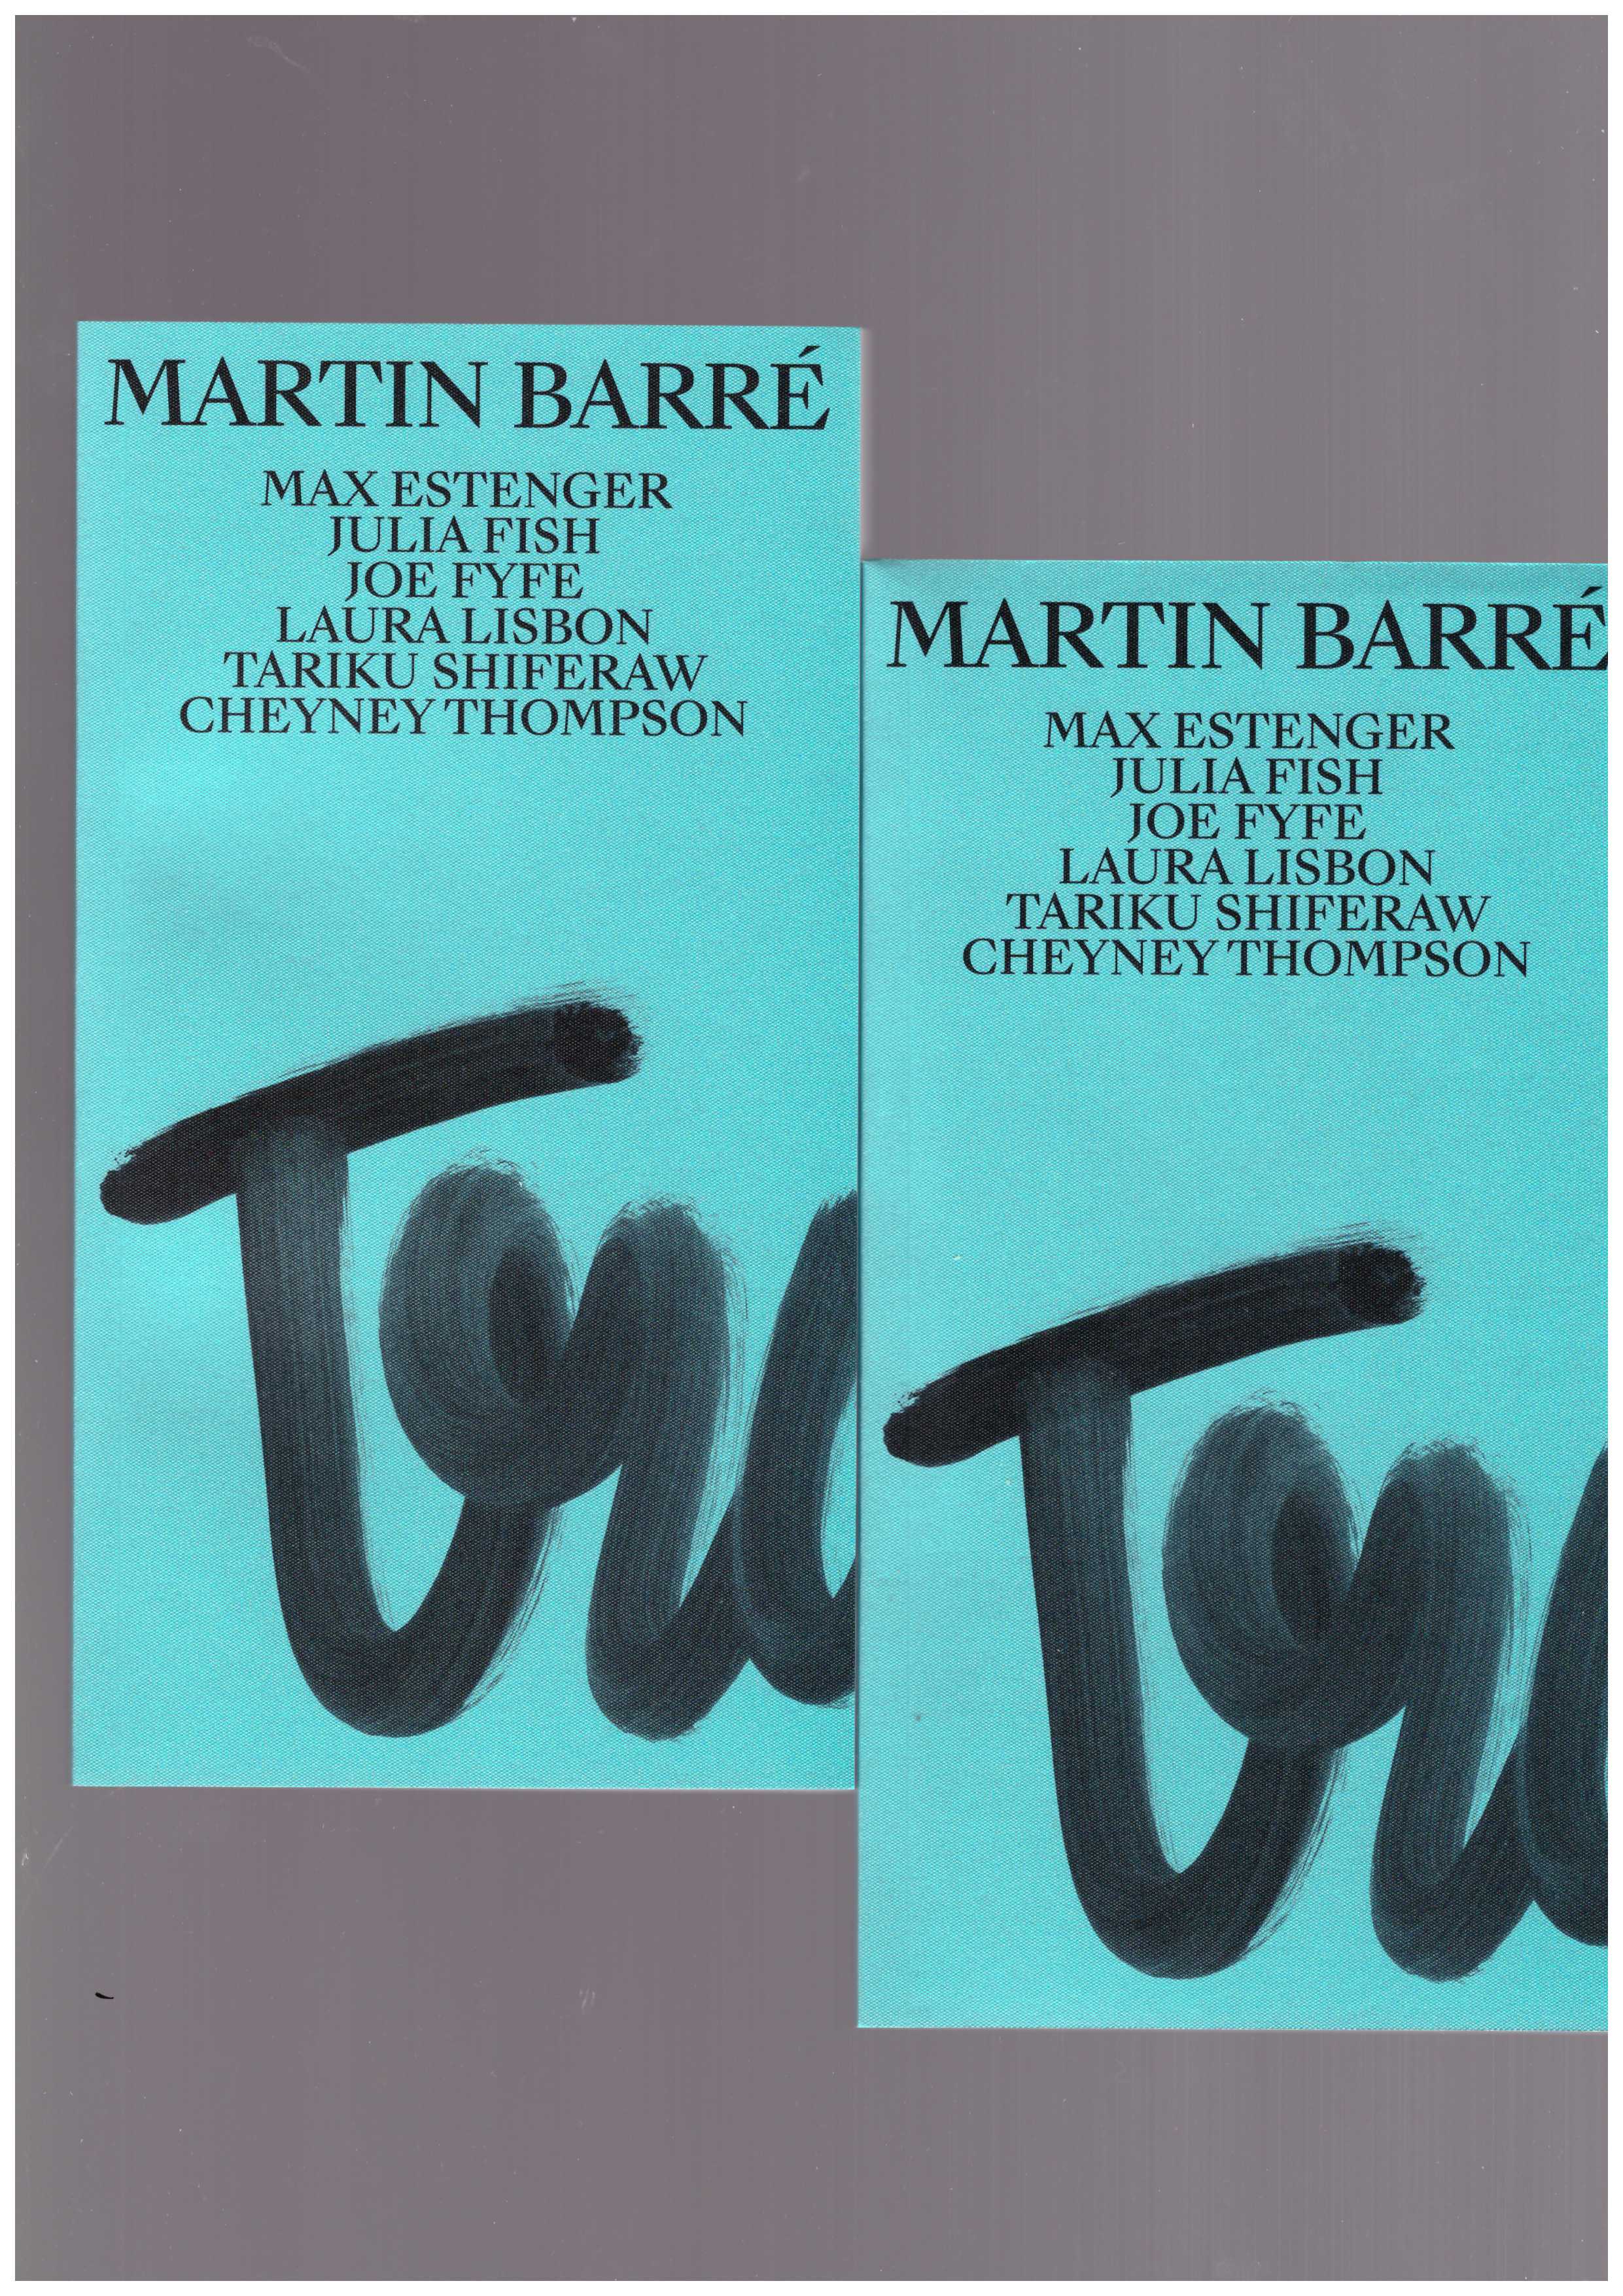 BARRÉ, Martin; WARNOCK, Molly (ed.) - Martin Barré. Transatlantique